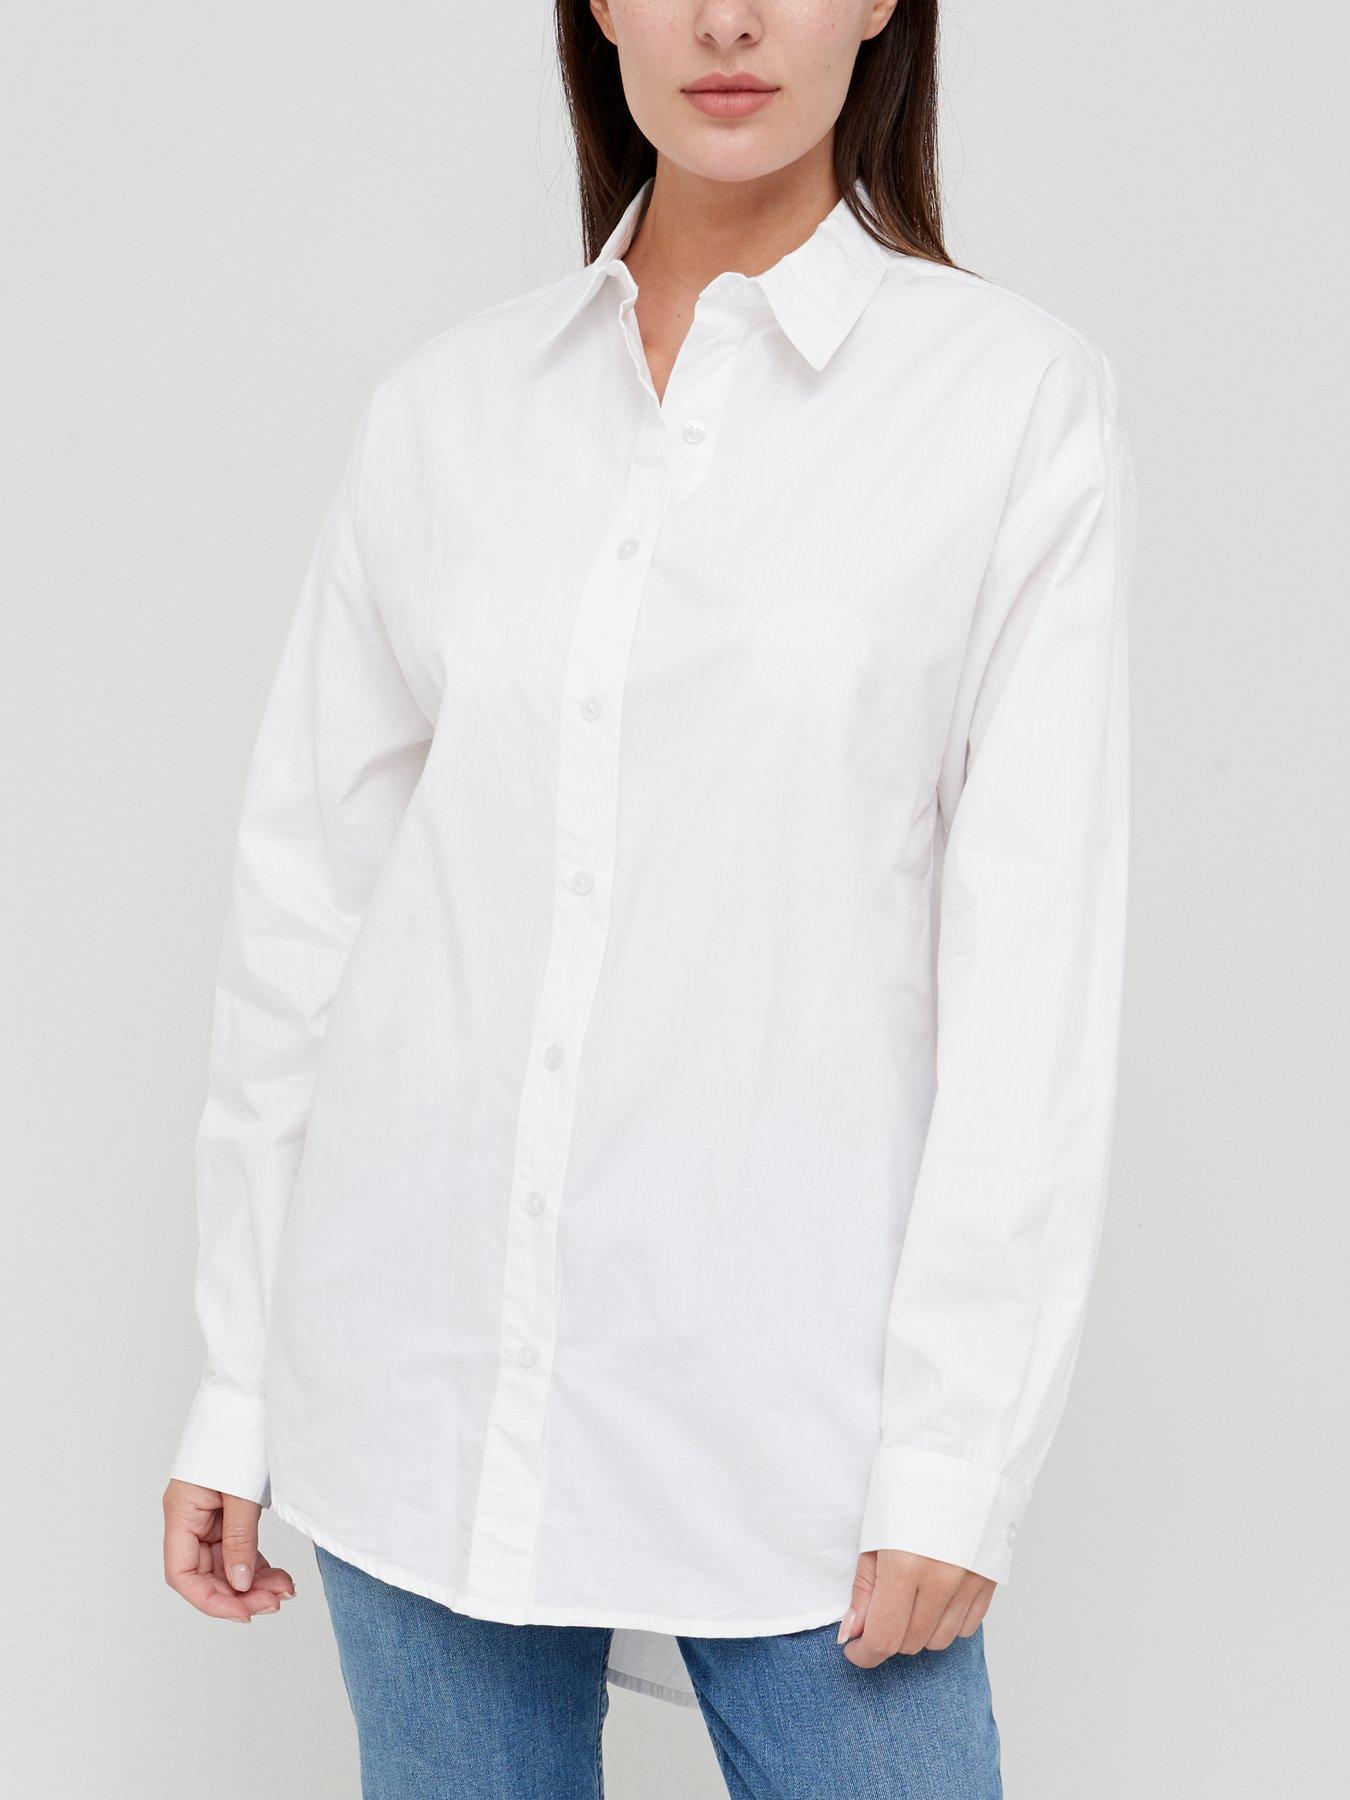 oversized white long sleeve shirt